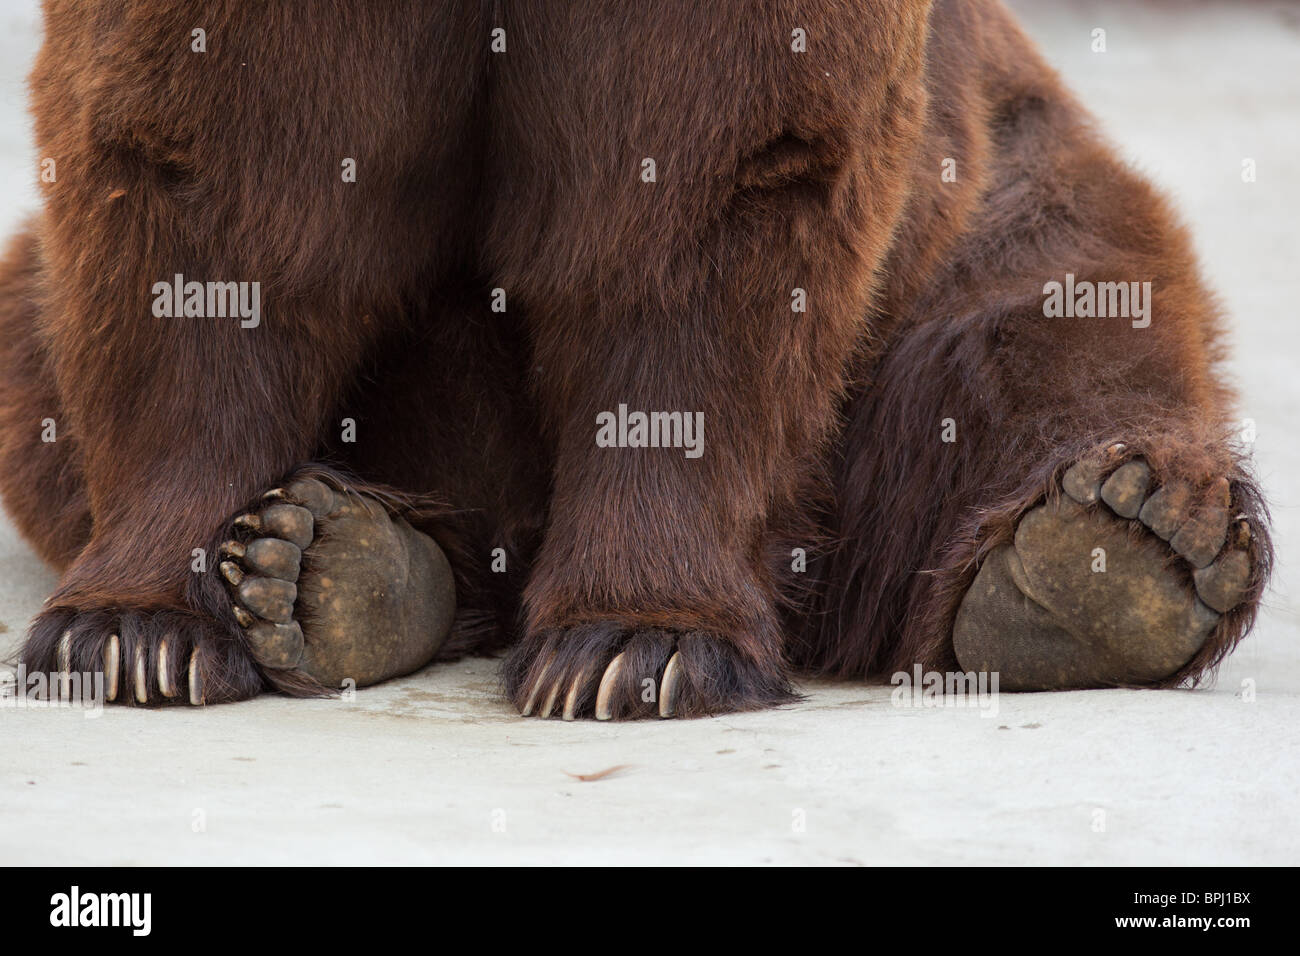 Pattes d'un ours brun de près. Vieux ours brun dans un zoo. Ursus arctos Banque D'Images